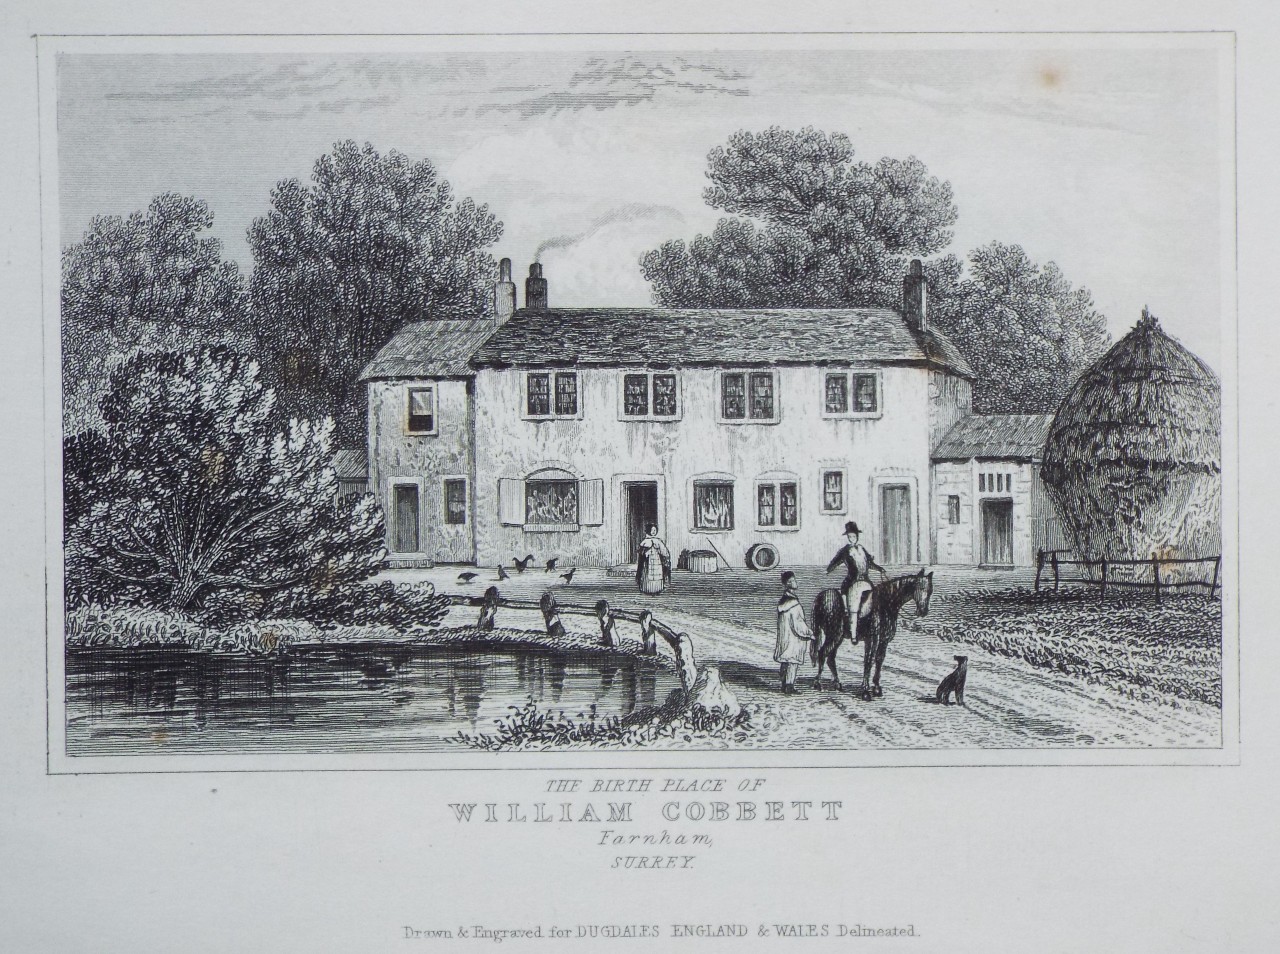 Print - The Birth Place of William Cobett Farnham, Surrey.